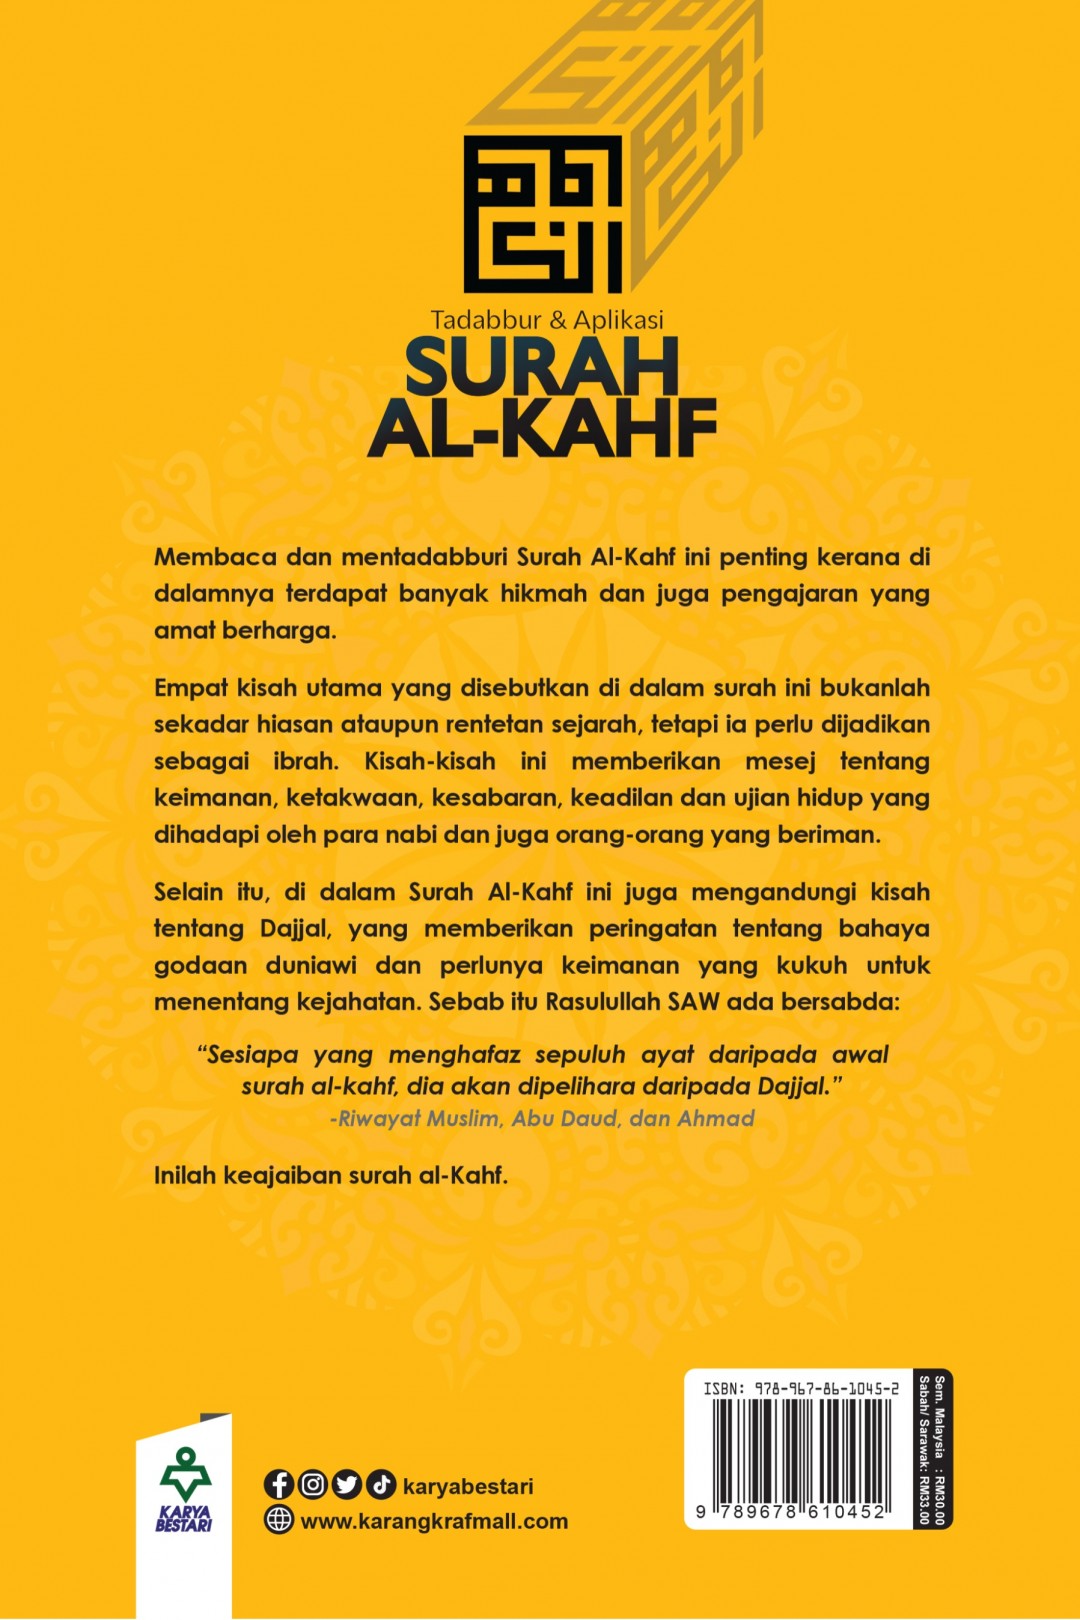 Tadabbur & Aplikasi Surah Al-Kahf - Fazrul Ismail